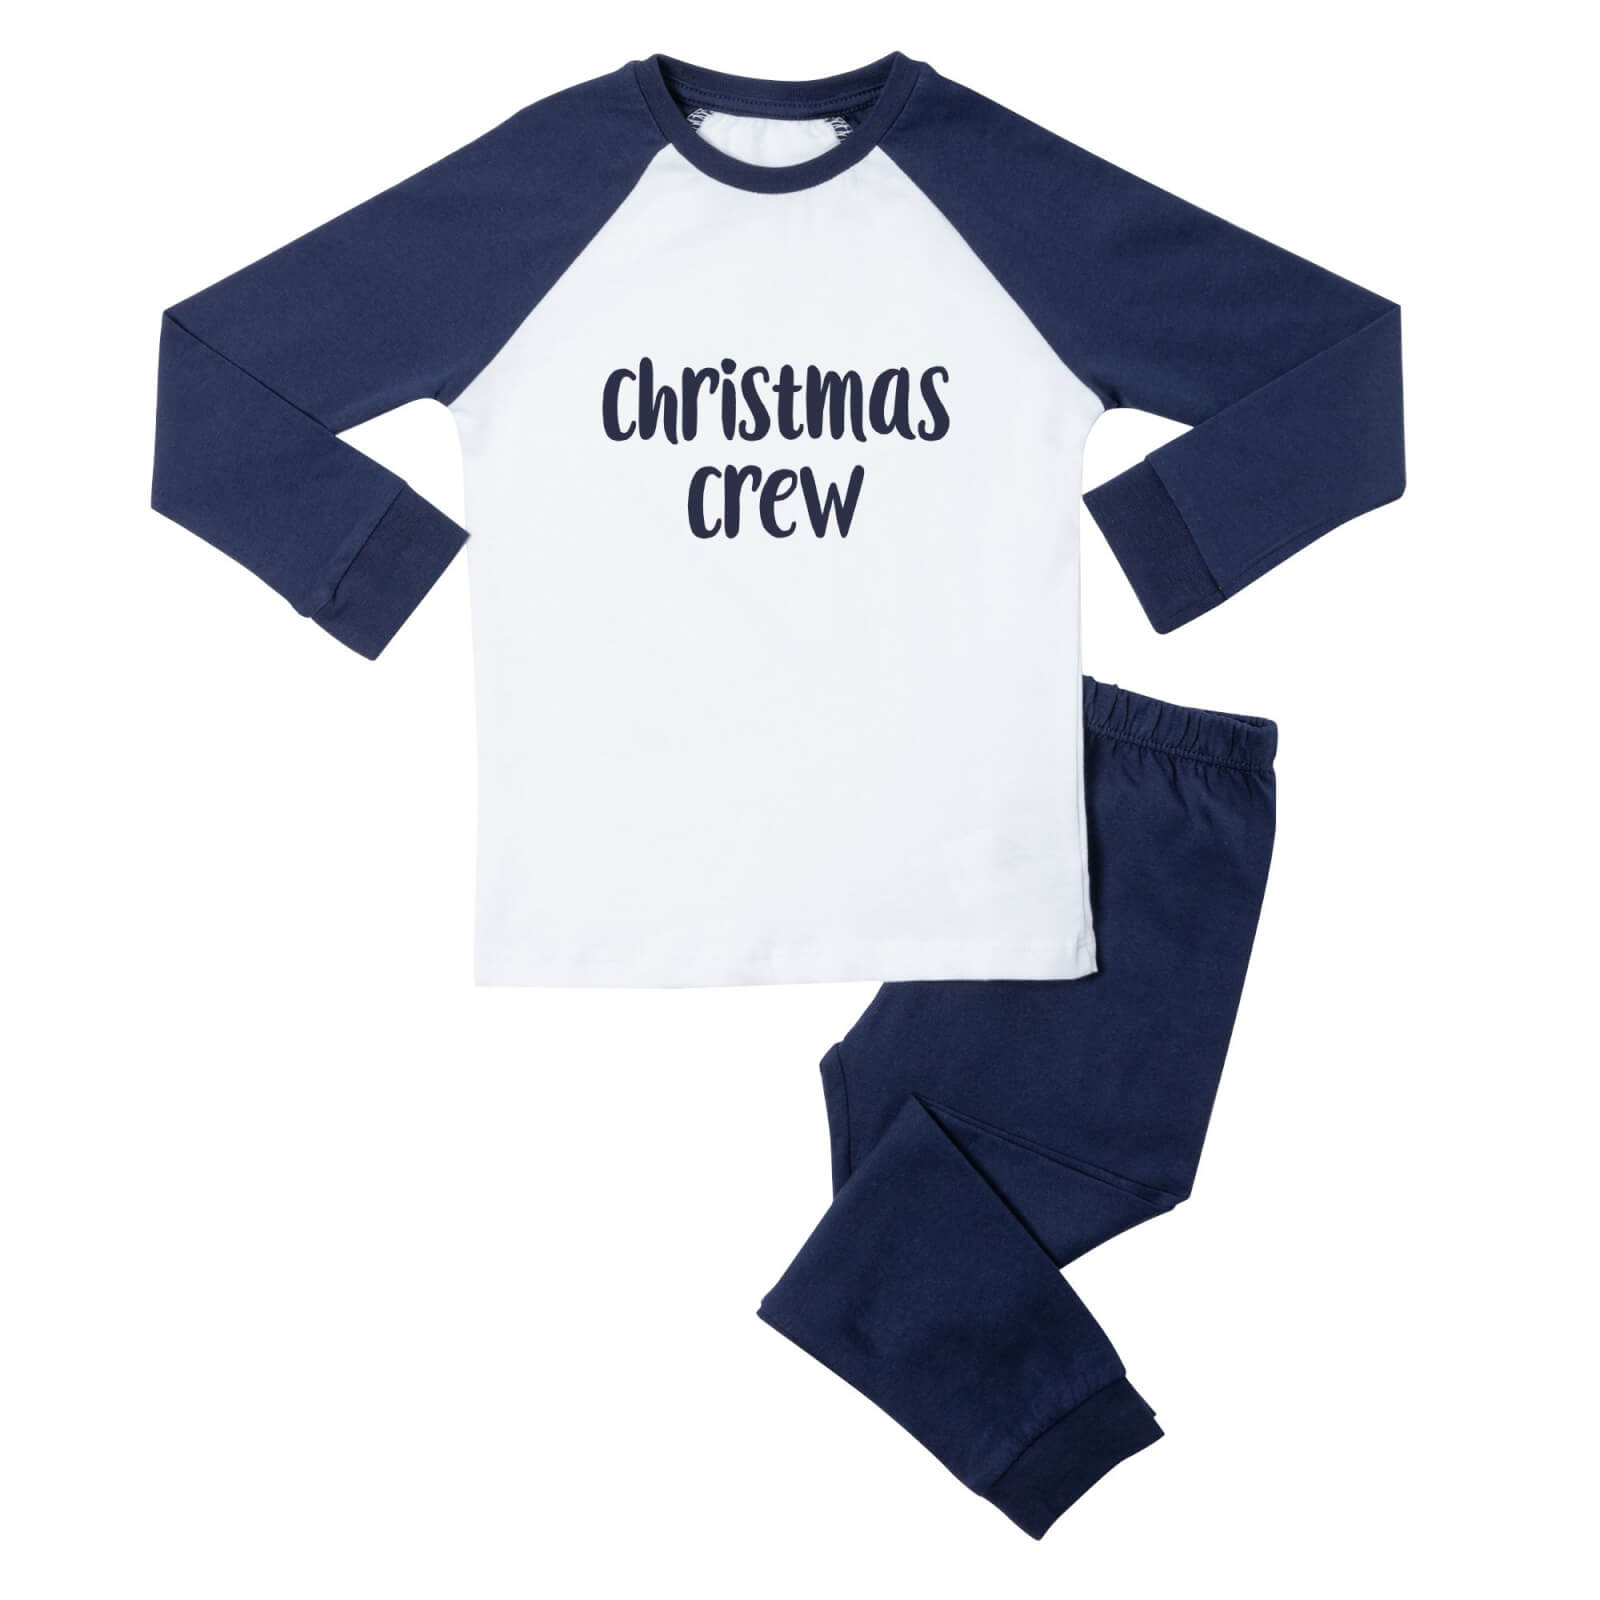 Christmas Crew Kids' Pyjamas - Navy White - 3-4 Years - Navy White